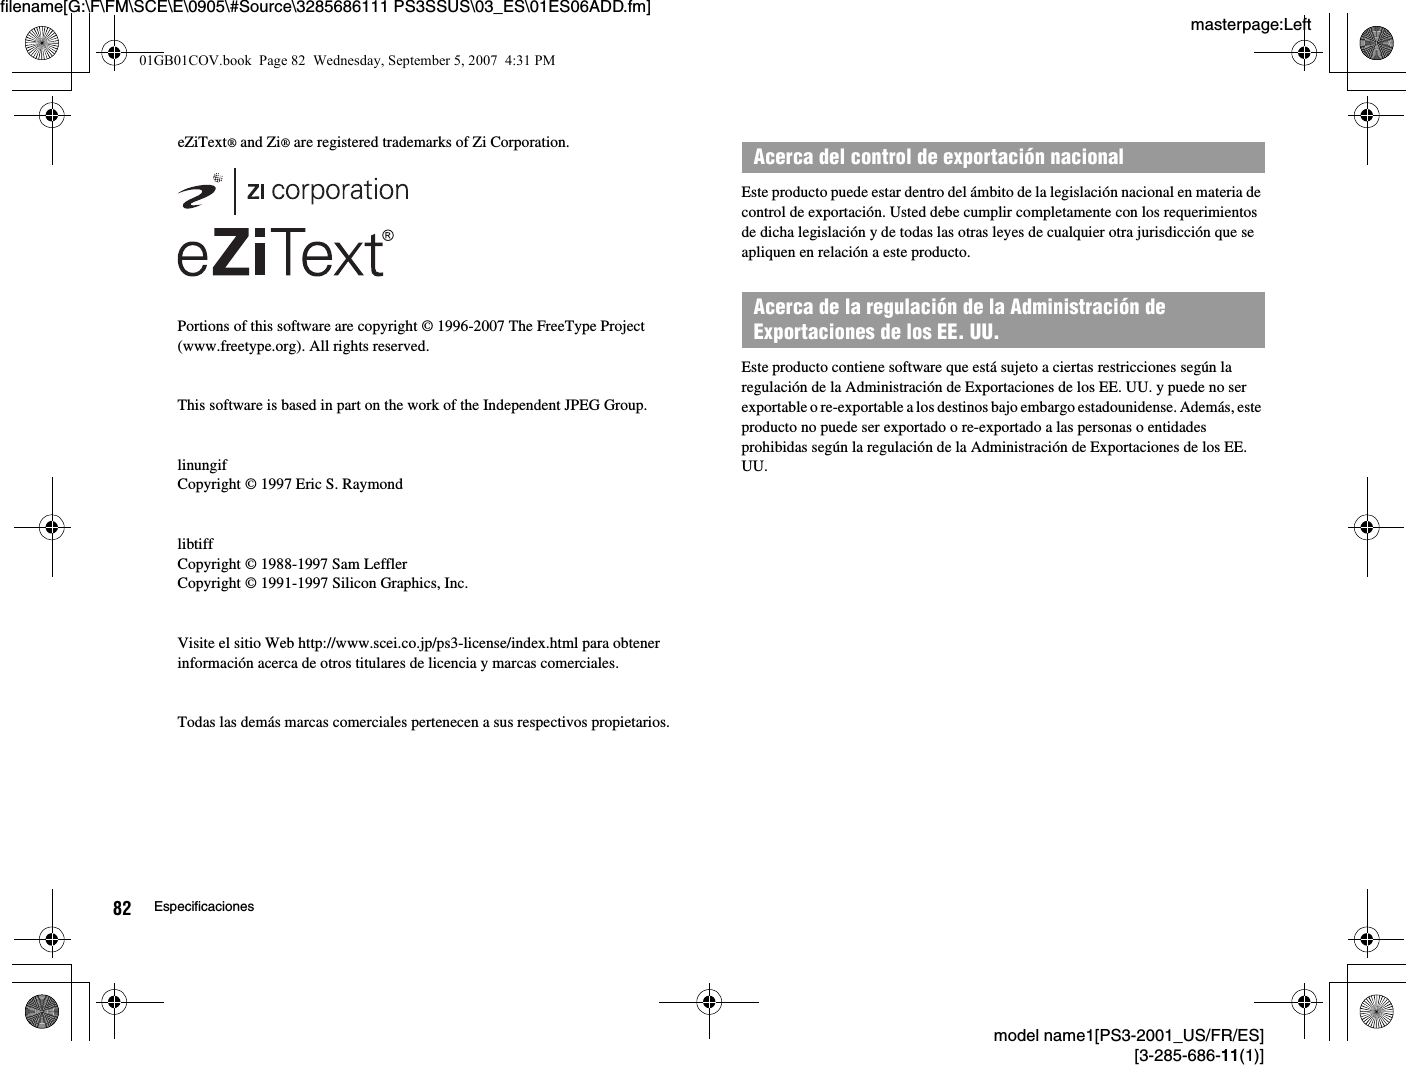 masterpage:Leftfilename[G:\F\FM\SCE\E\0905\#Source\3285686111 PS3SSUS\03_ES\01ES06ADD.fm]model name1[PS3-2001_US/FR/ES][3-285-686-11(1)]82 EspecificacioneseZiText® and Zi® are registered trademarks of Zi Corporation.Portions of this software are copyright © 1996-2007 The FreeType Project(www.freetype.org). All rights reserved.This software is based in part on the work of the Independent JPEG Group.linungifCopyright © 1997 Eric S. RaymondlibtiffCopyright © 1988-1997 Sam LefflerCopyright © 1991-1997 Silicon Graphics, Inc.Visite el sitio Web http://www.scei.co.jp/ps3-license/index.html para obtener información acerca de otros titulares de licencia y marcas comerciales.Todas las demás marcas comerciales pertenecen a sus respectivos propietarios.Este producto puede estar dentro del ámbito de la legislación nacional en materia de control de exportación. Usted debe cumplir completamente con los requerimientos de dicha legislación y de todas las otras leyes de cualquier otra jurisdicción que se apliquen en relación a este producto.Este producto contiene software que está sujeto a ciertas restricciones según la regulación de la Administración de Exportaciones de los EE. UU. y puede no ser exportable o re-exportable a los destinos bajo embargo estadounidense. Además, este producto no puede ser exportado o re-exportado a las personas o entidades prohibidas según la regulación de la Administración de Exportaciones de los EE. UU.Acerca del control de exportación nacionalAcerca de la regulación de la Administración de Exportaciones de los EE. UU.01GB01COV.book  Page 82  Wednesday, September 5, 2007  4:31 PM